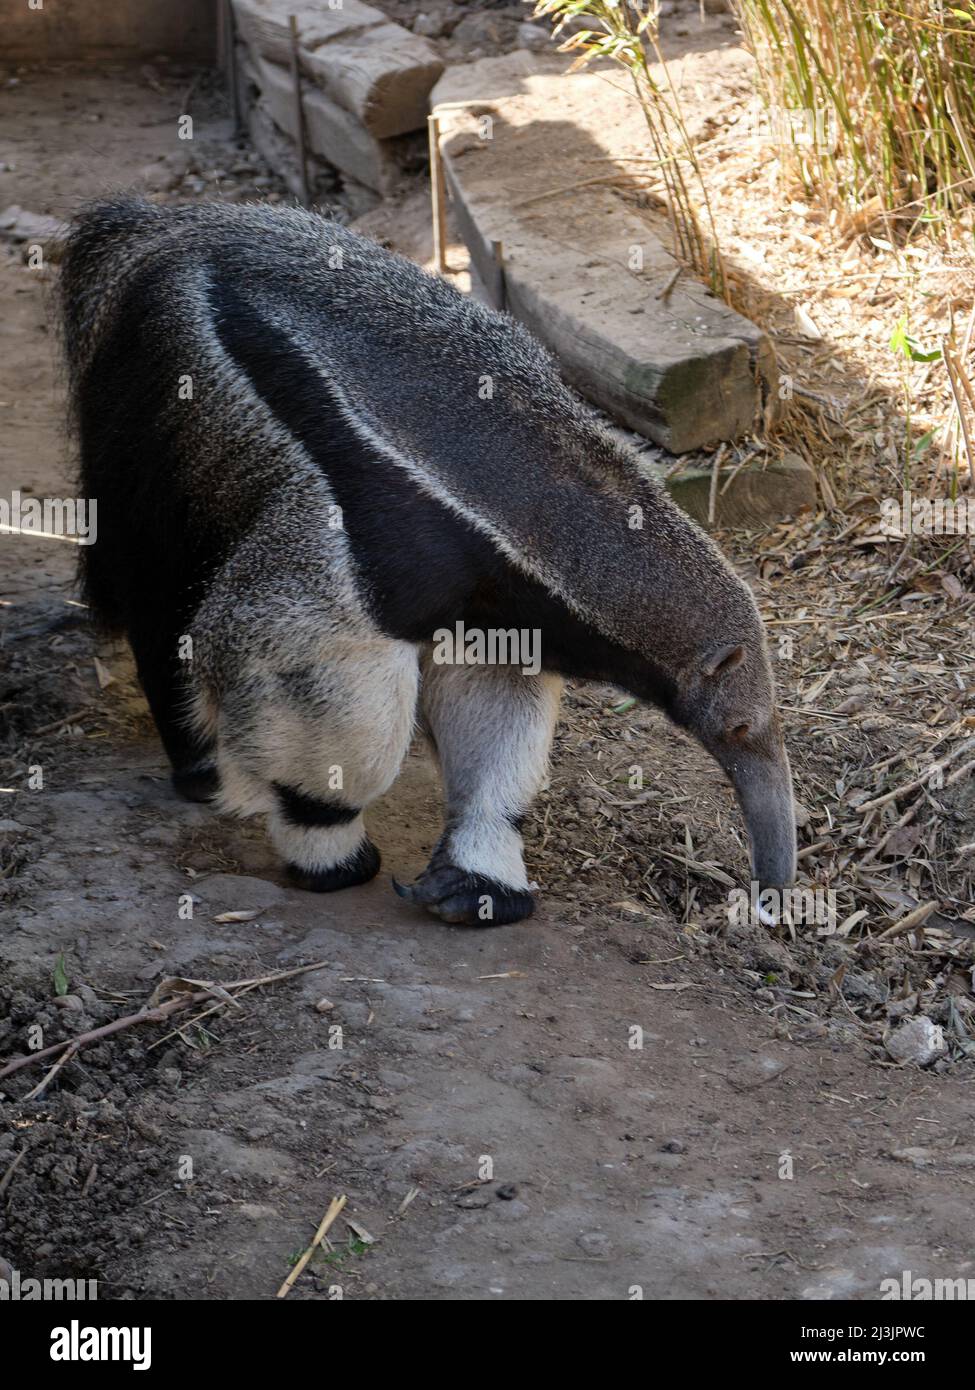 L'anteater gigante (Myrmechophaga tridactyla), noto anche come orso formico, un mammifero insettivoro originario dell'America Centrale e del Sud Foto Stock